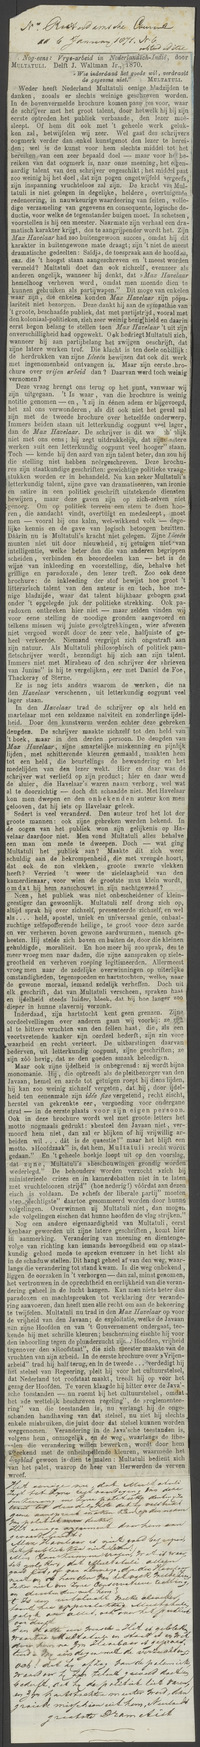 Recensie 'Nog eens: Vrye-arbeid in Nederlandsch-Indië', in Rotterdamsche Courant 6-1-1871